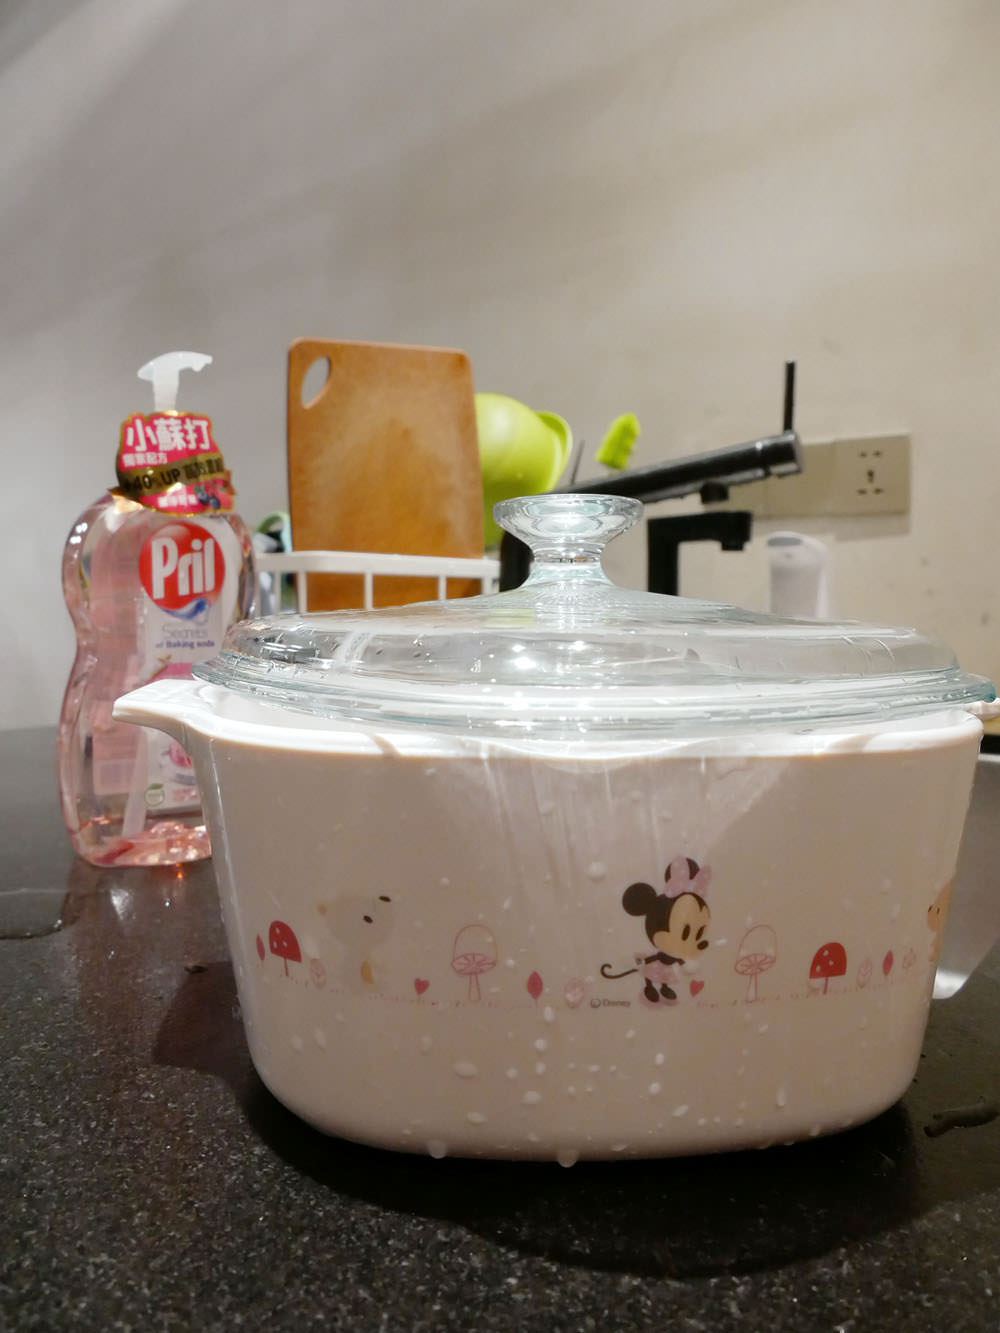 [生活] 美國康寧餐具CORELLE-Mickey & Minnie 童彩趣系列!最適合小朋友第一次接觸的可愛玻璃盤